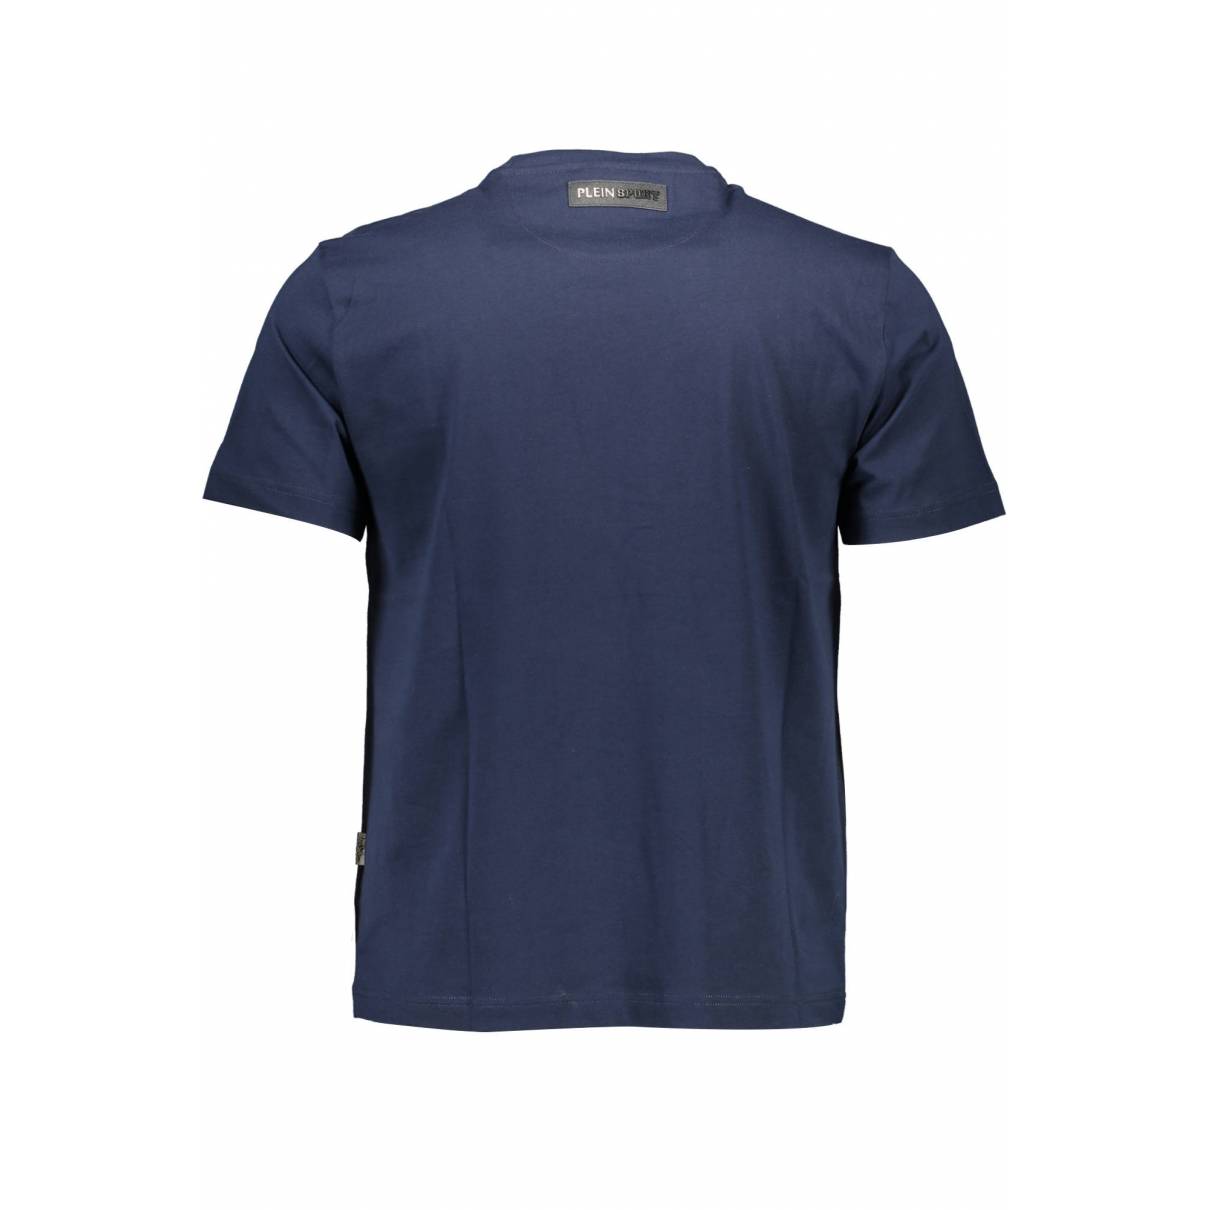 Buy Plein Sport T-shirt online